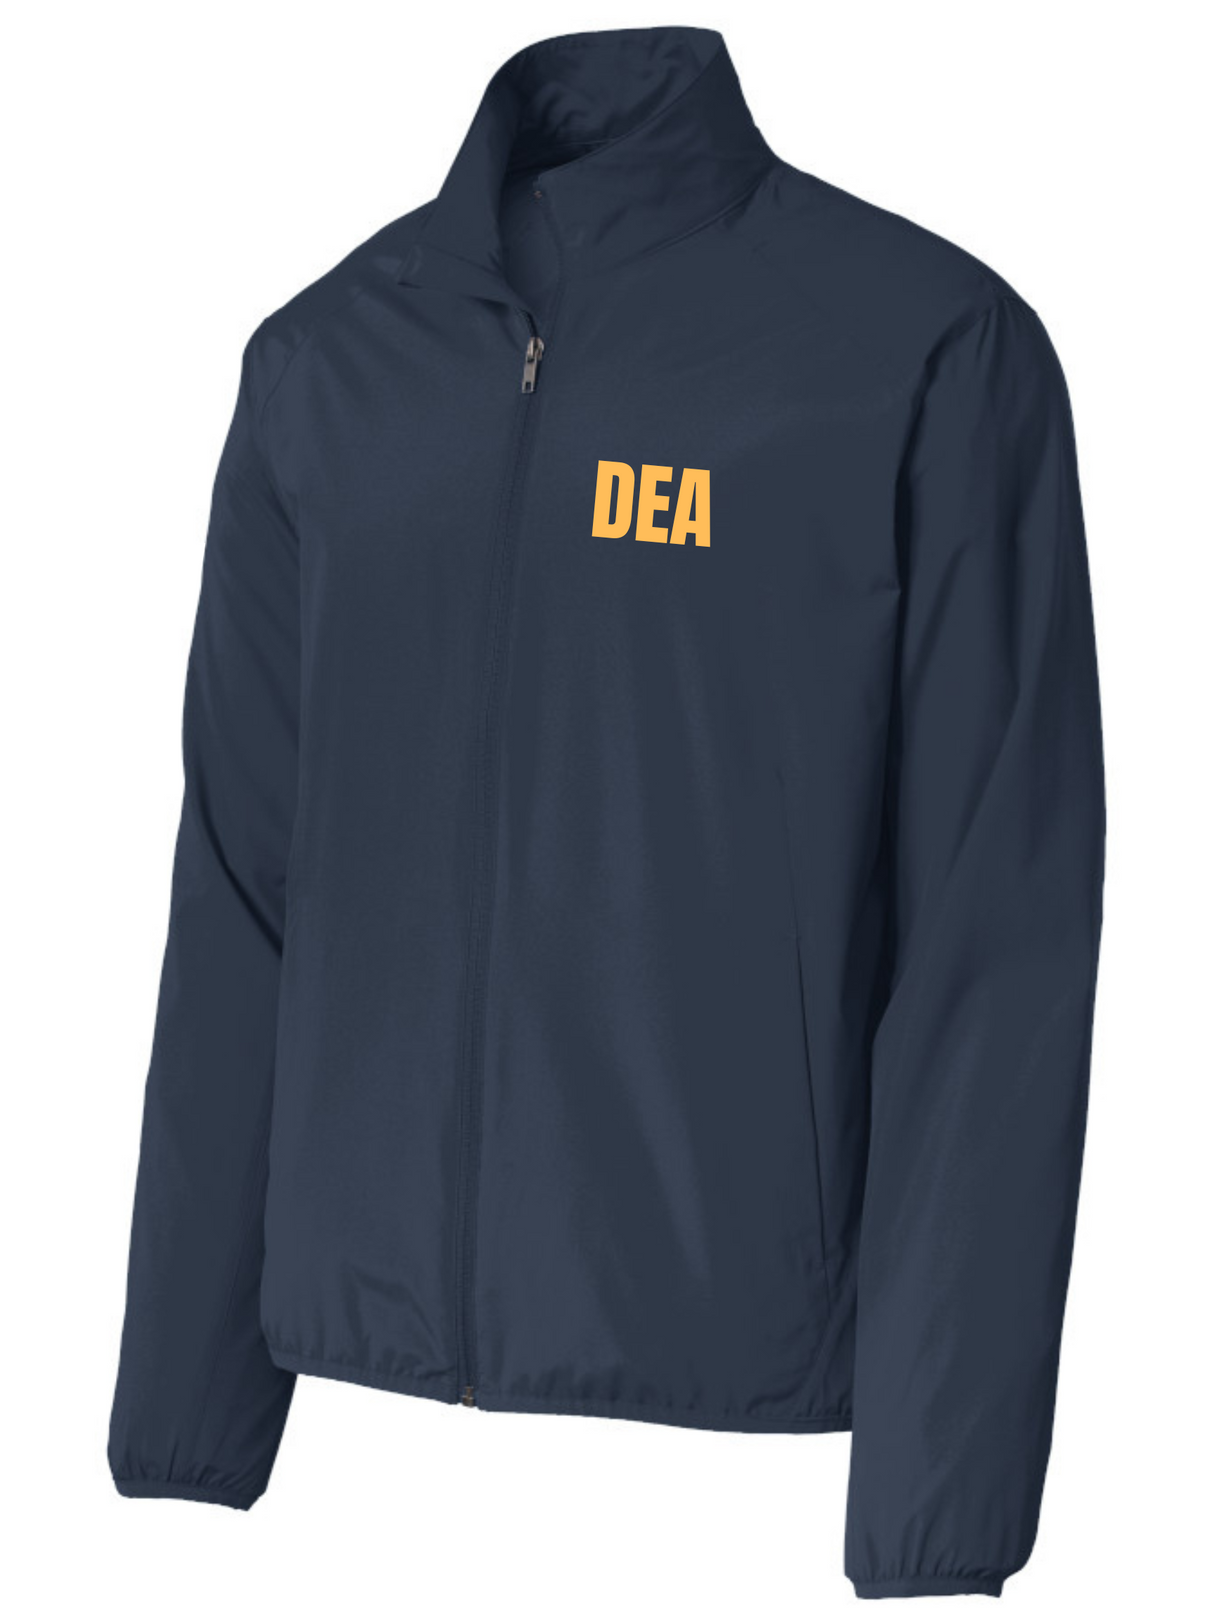 DEA Intelligence- Agency Identifier Jacket - FEDS Apparel